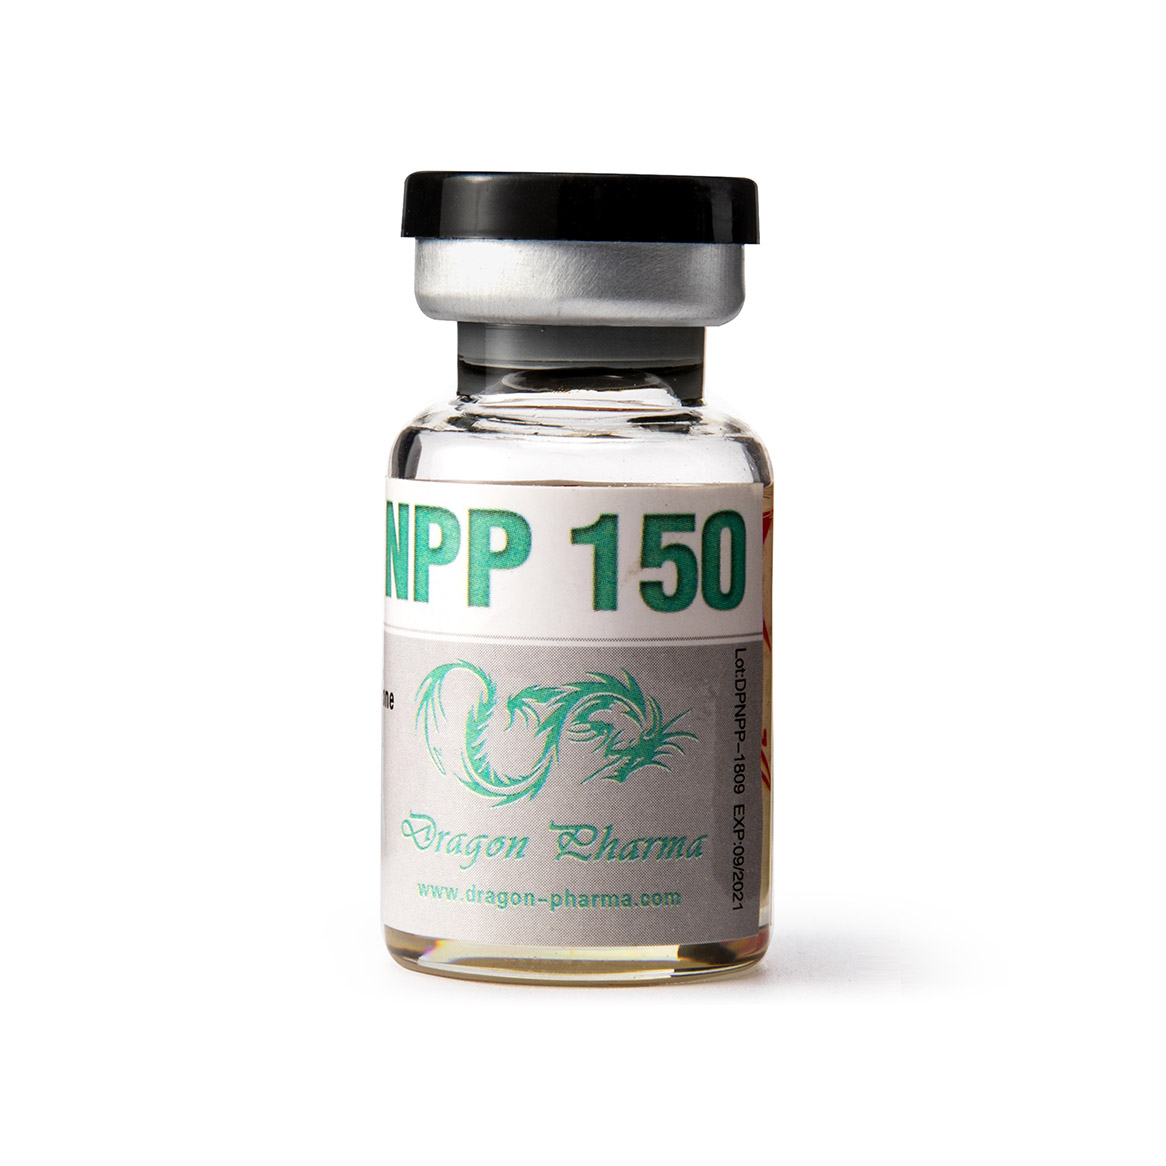 Npp 150 10ml Dragon Pharma Iniezione di steroidi